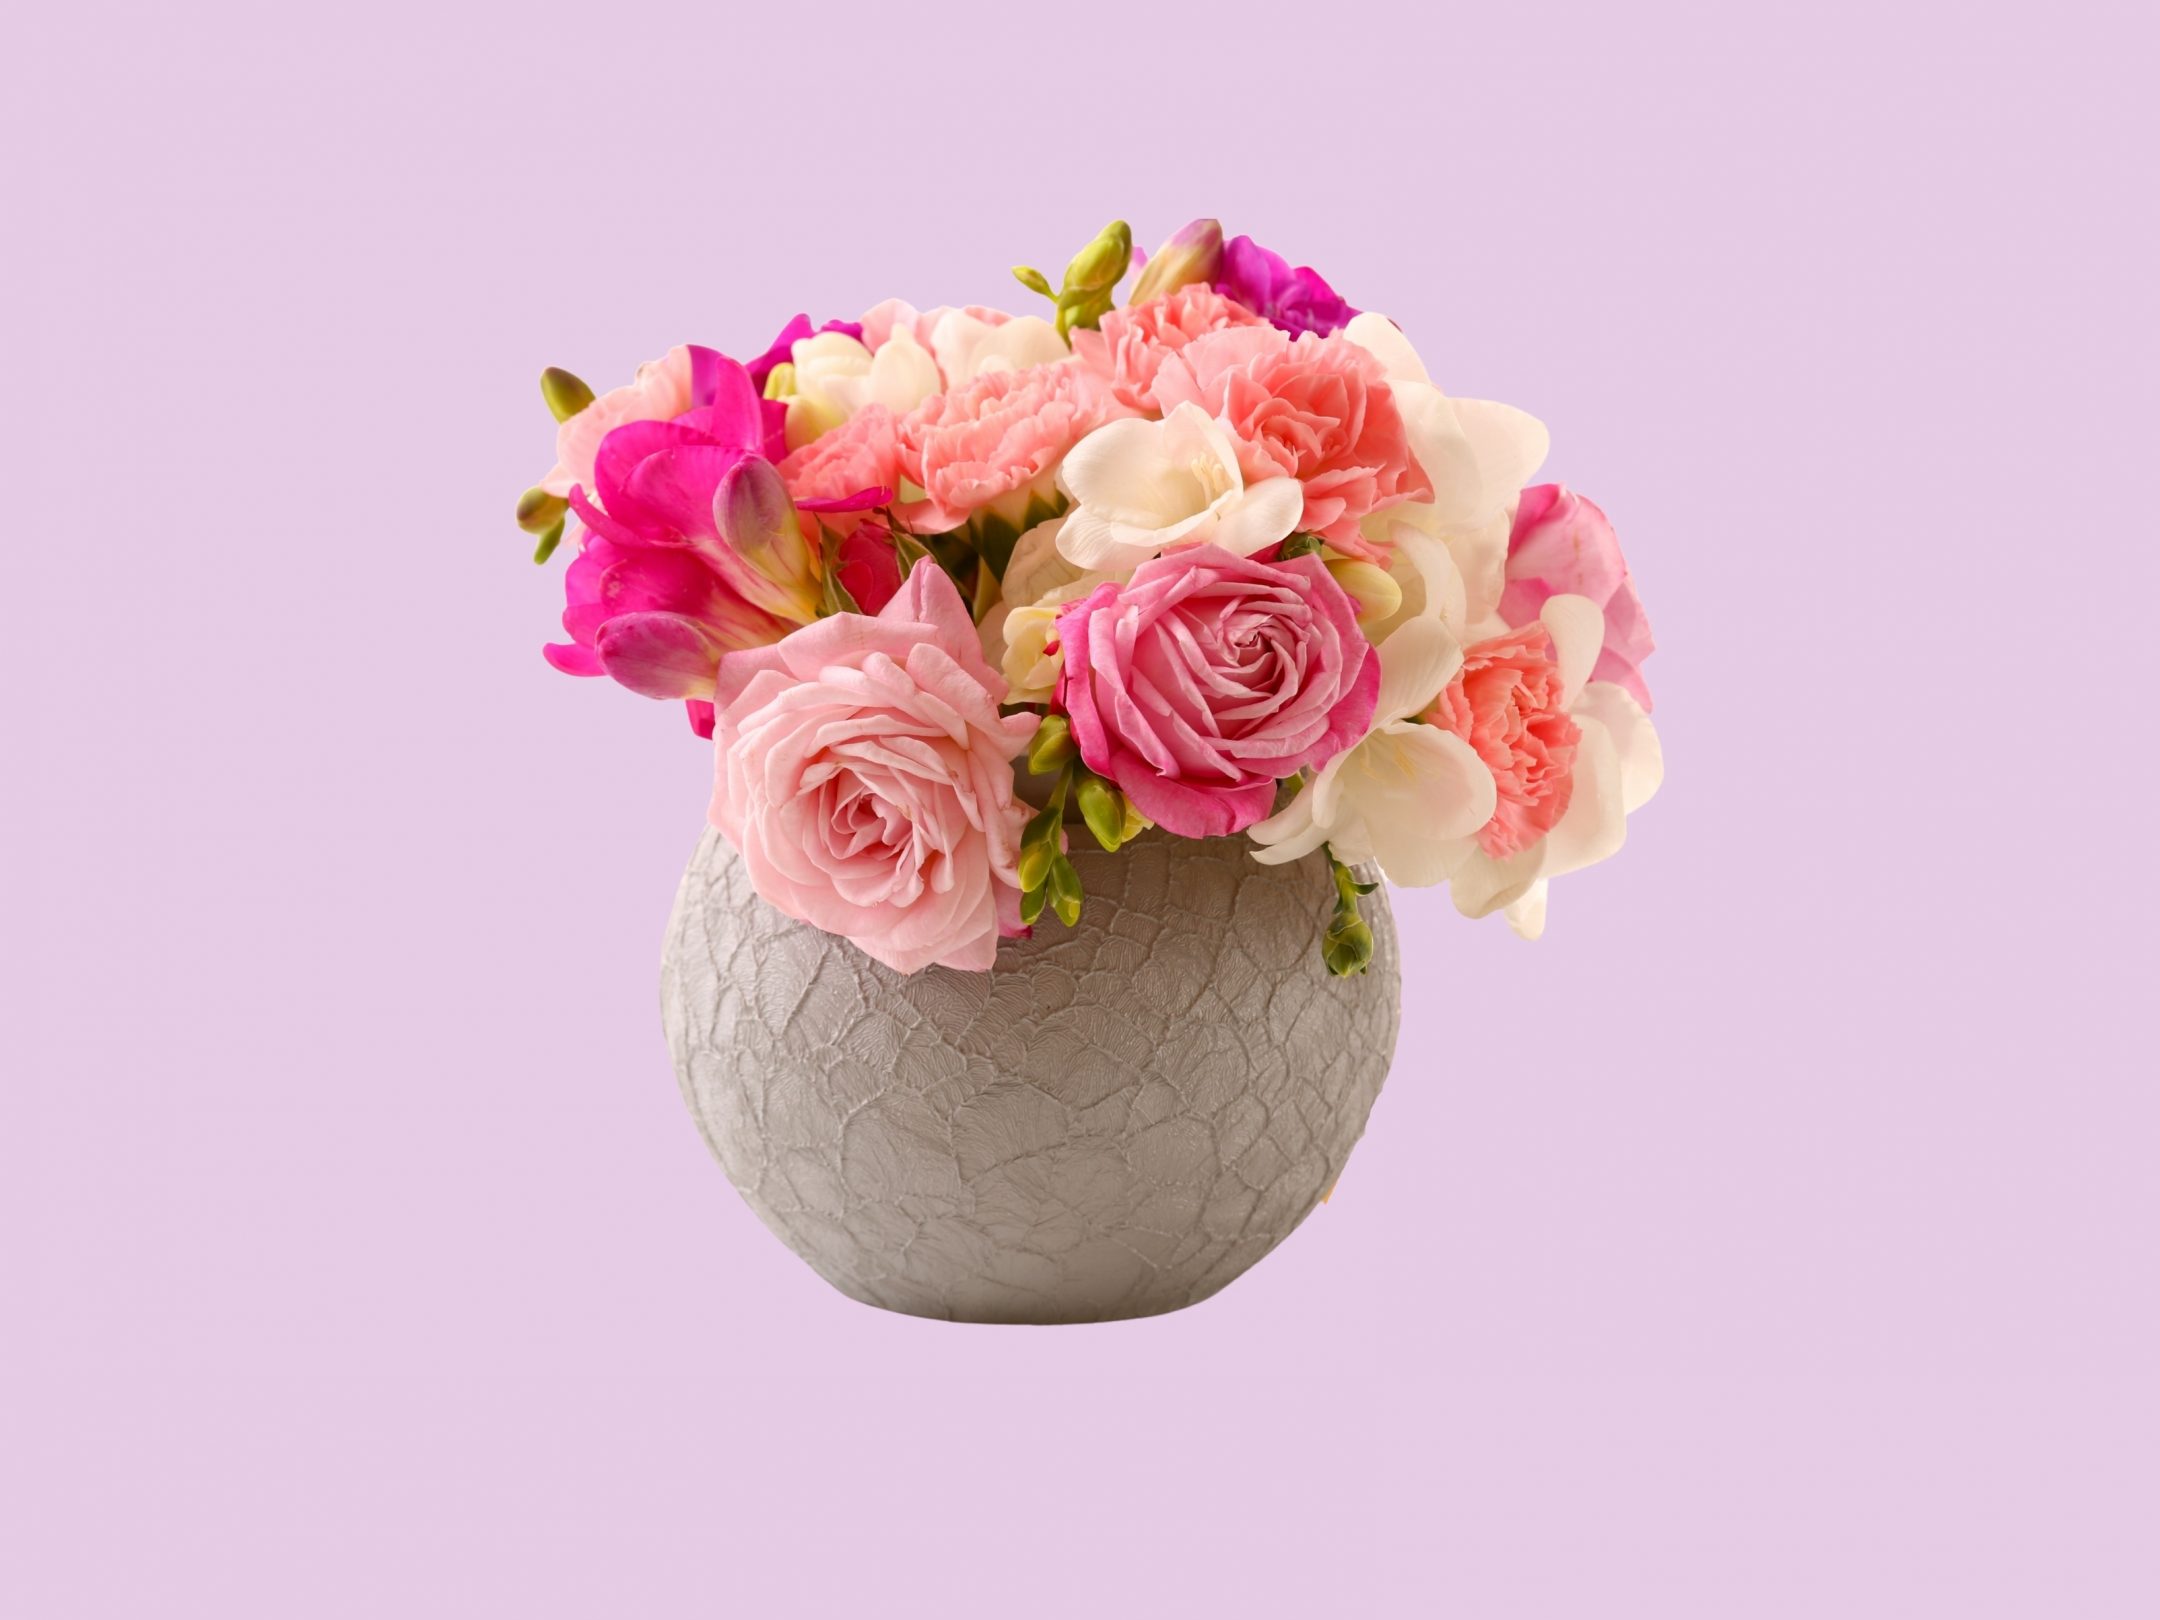 2160x1620 iPad wallpaper 4k Vase Pink Roses Floral Pot iPad Wallpaper 2160x1620 pixels resolution